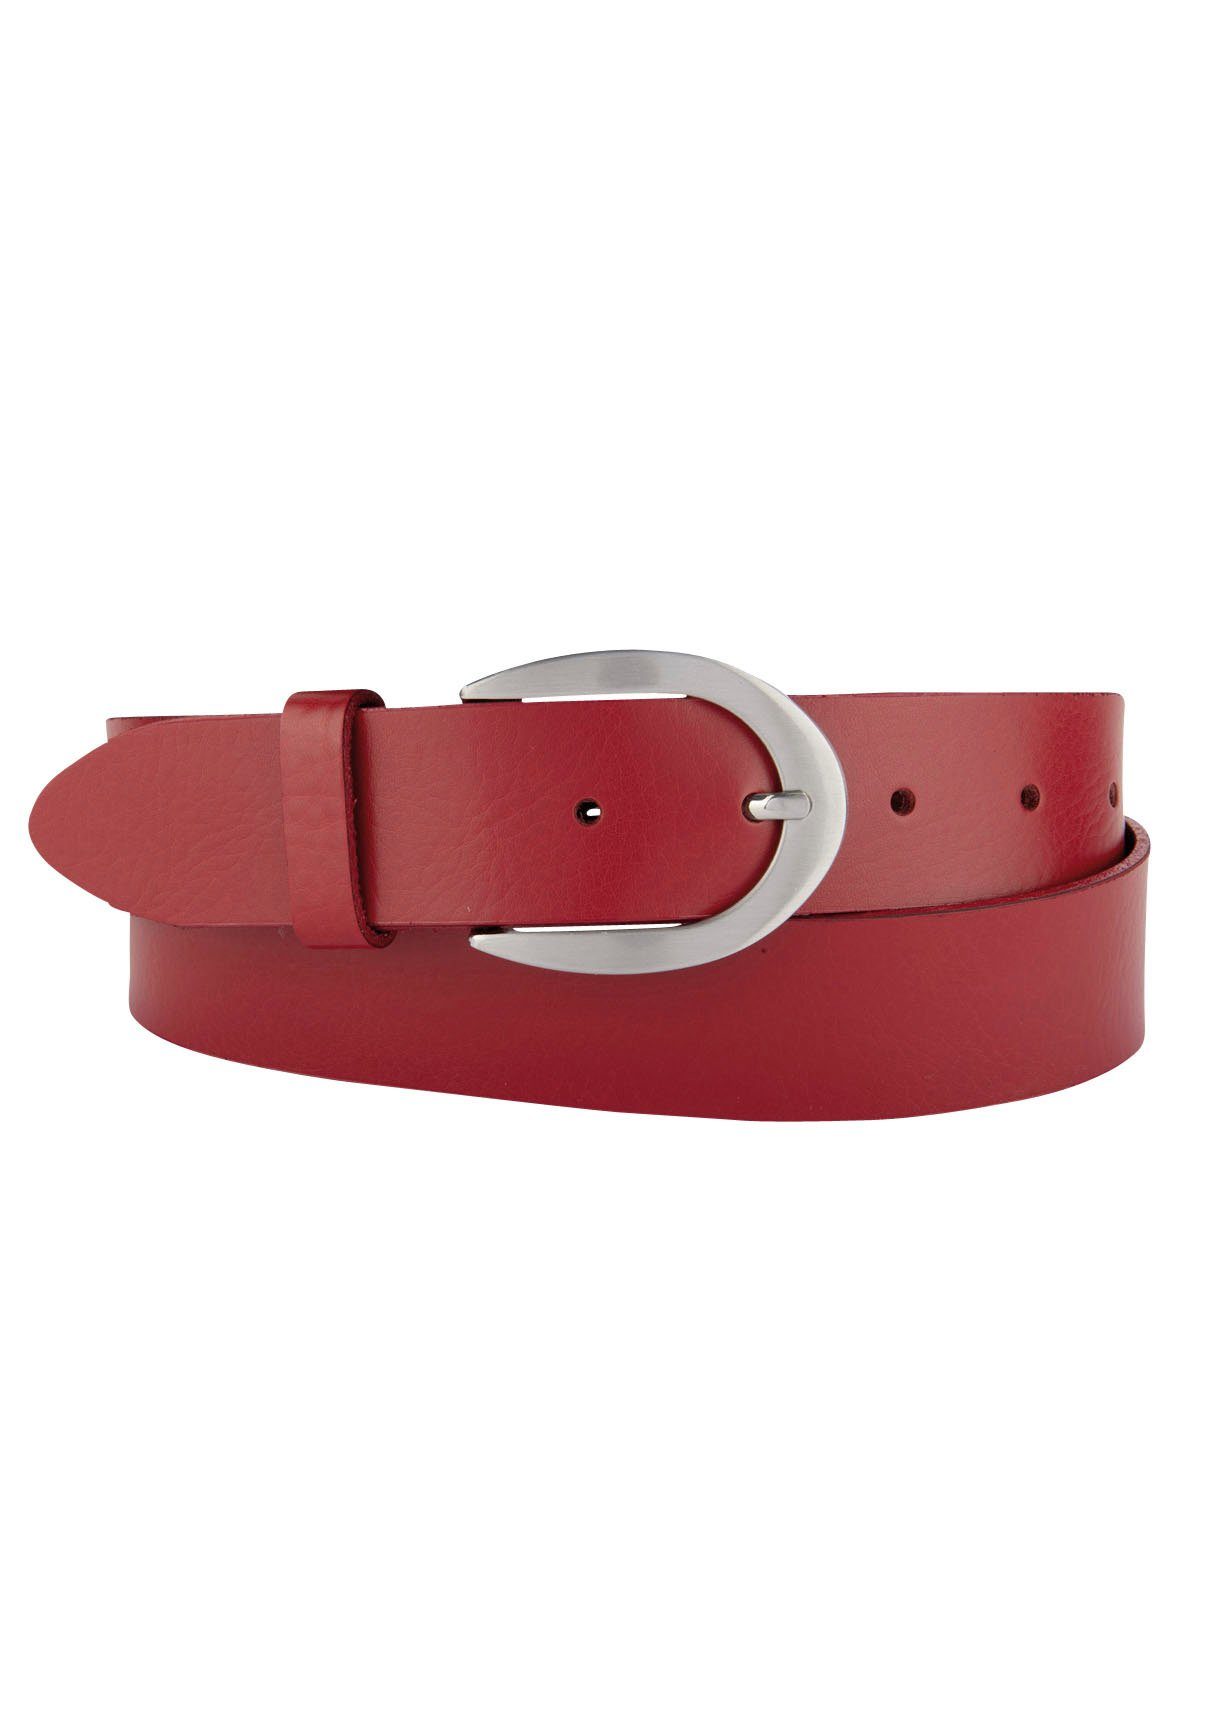 BERND GÖTZ Ledergürtel mit glänzender Schließe in Hufeisenform rot | Anzuggürtel